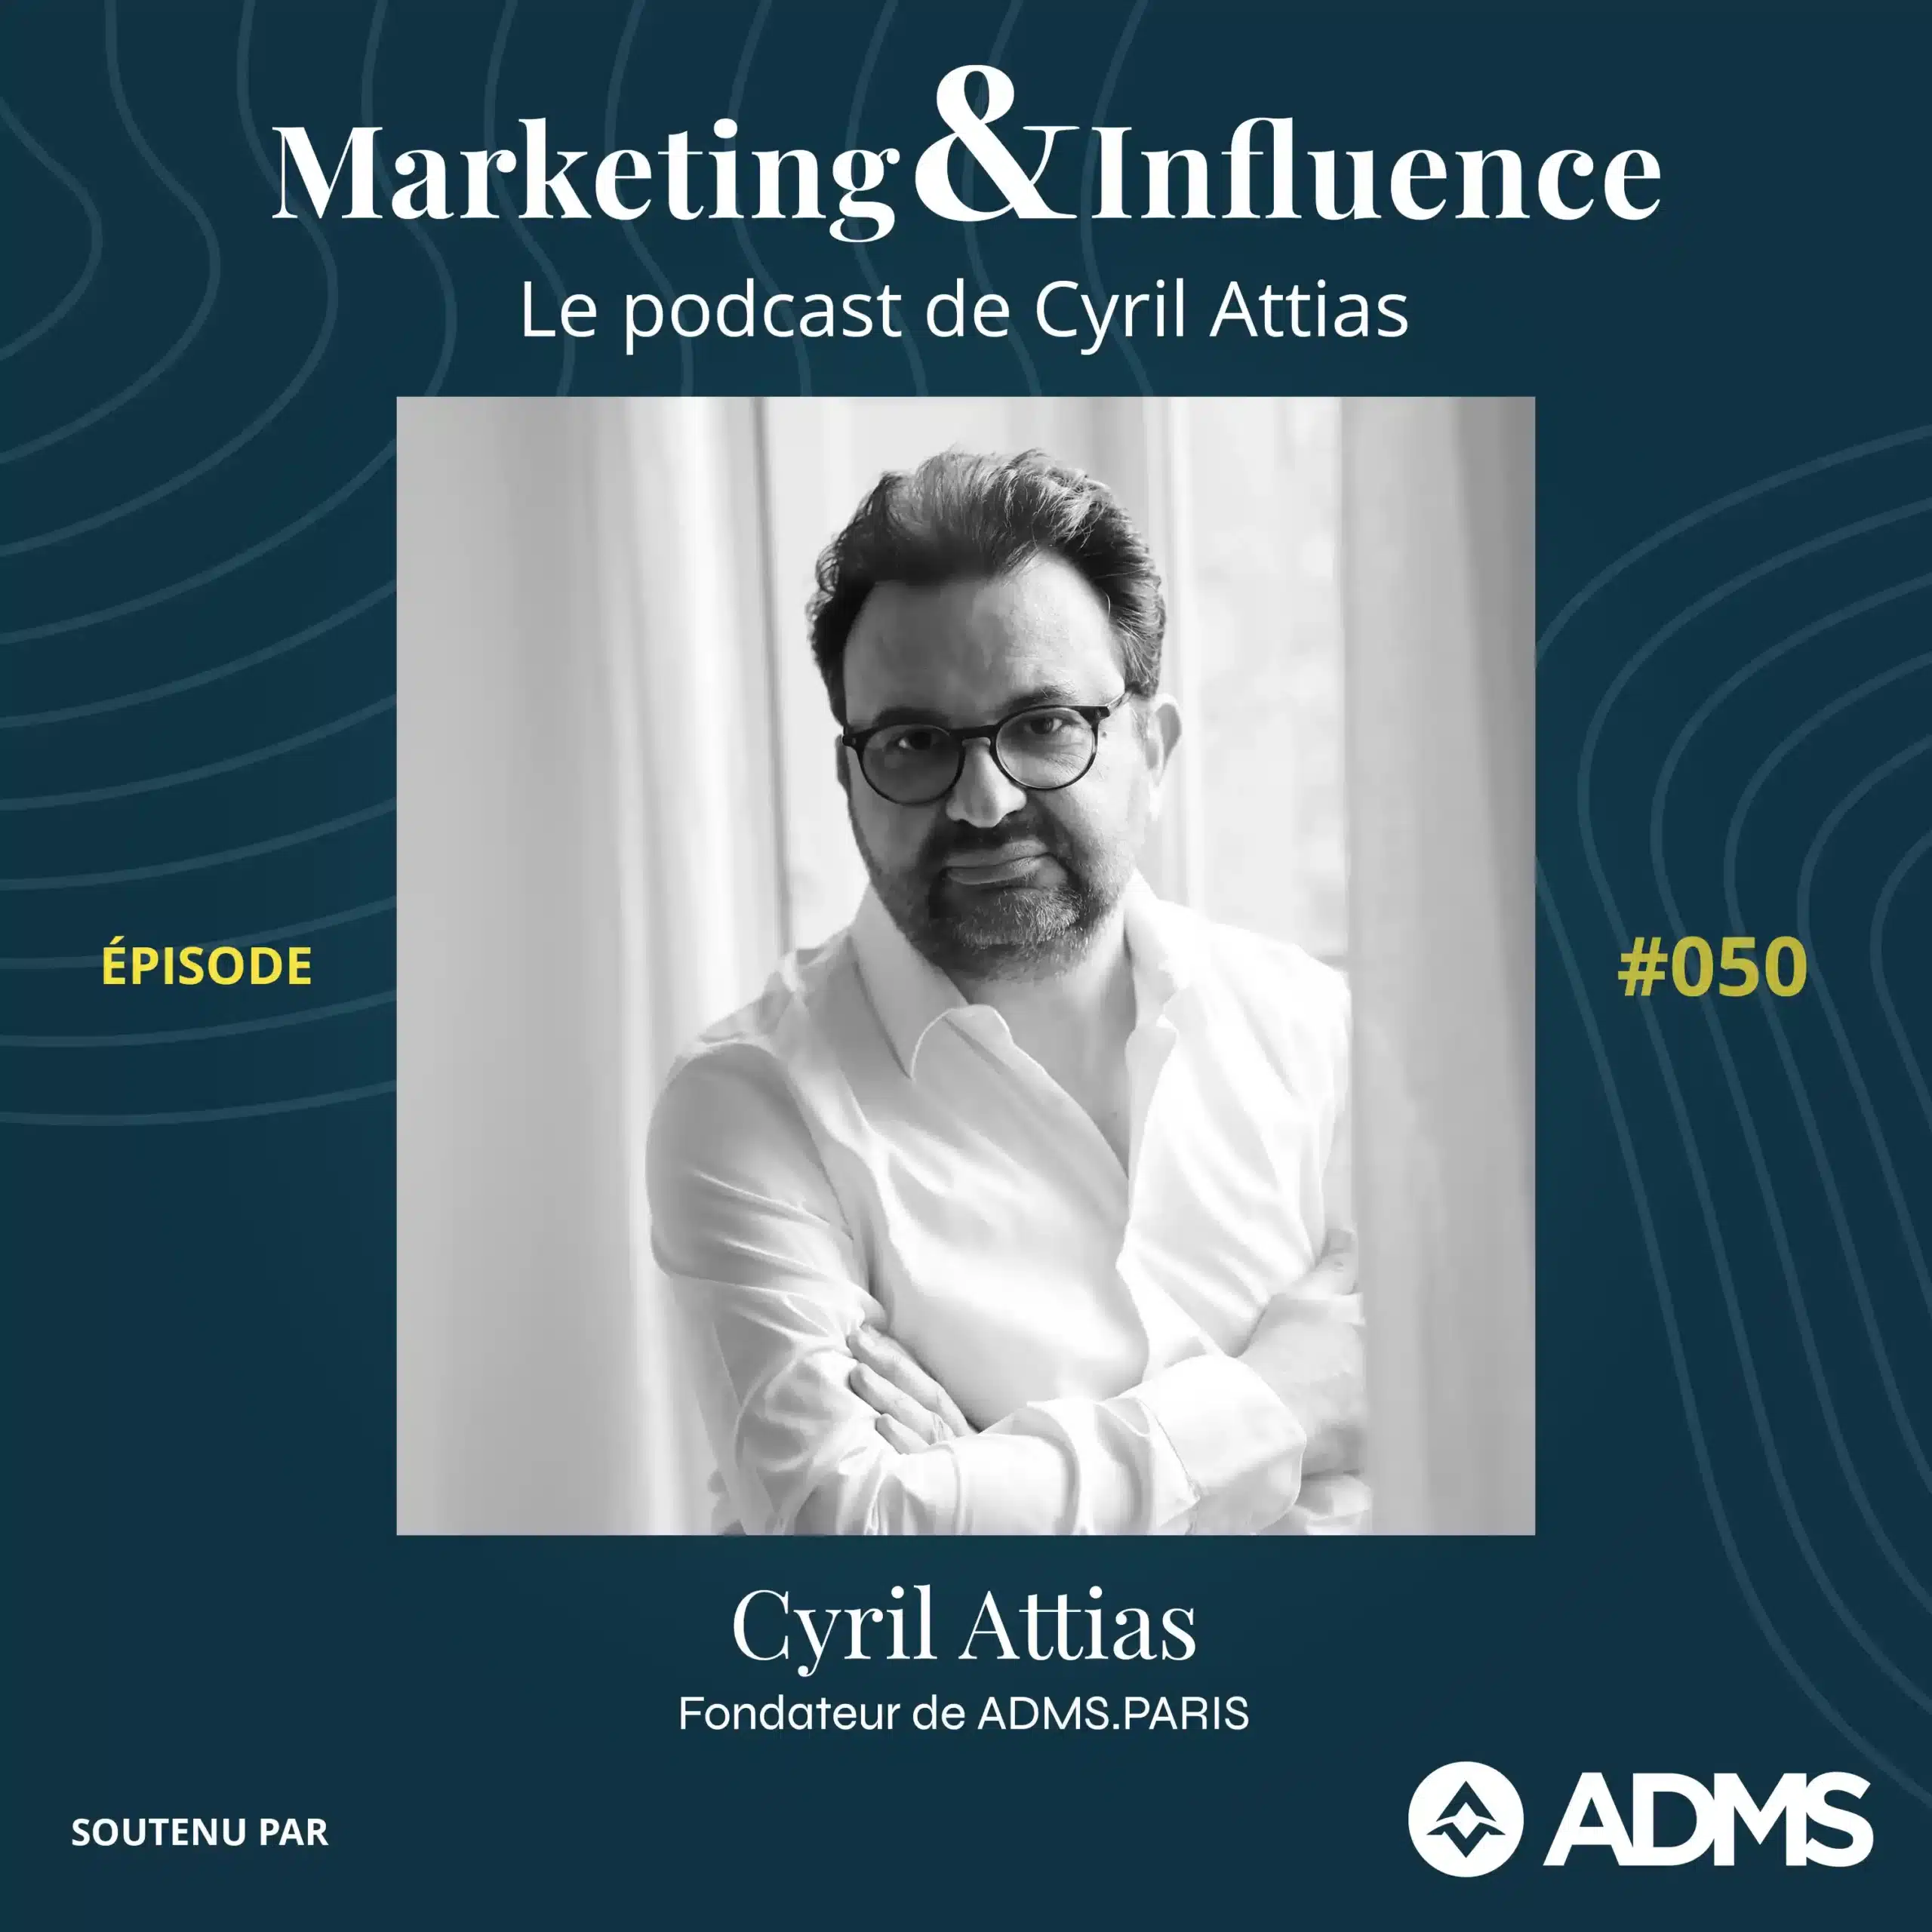 Episode-Cyril-Attias-ADMS-PARIS-podcast-Cyril-Attias-Marketing-Influence